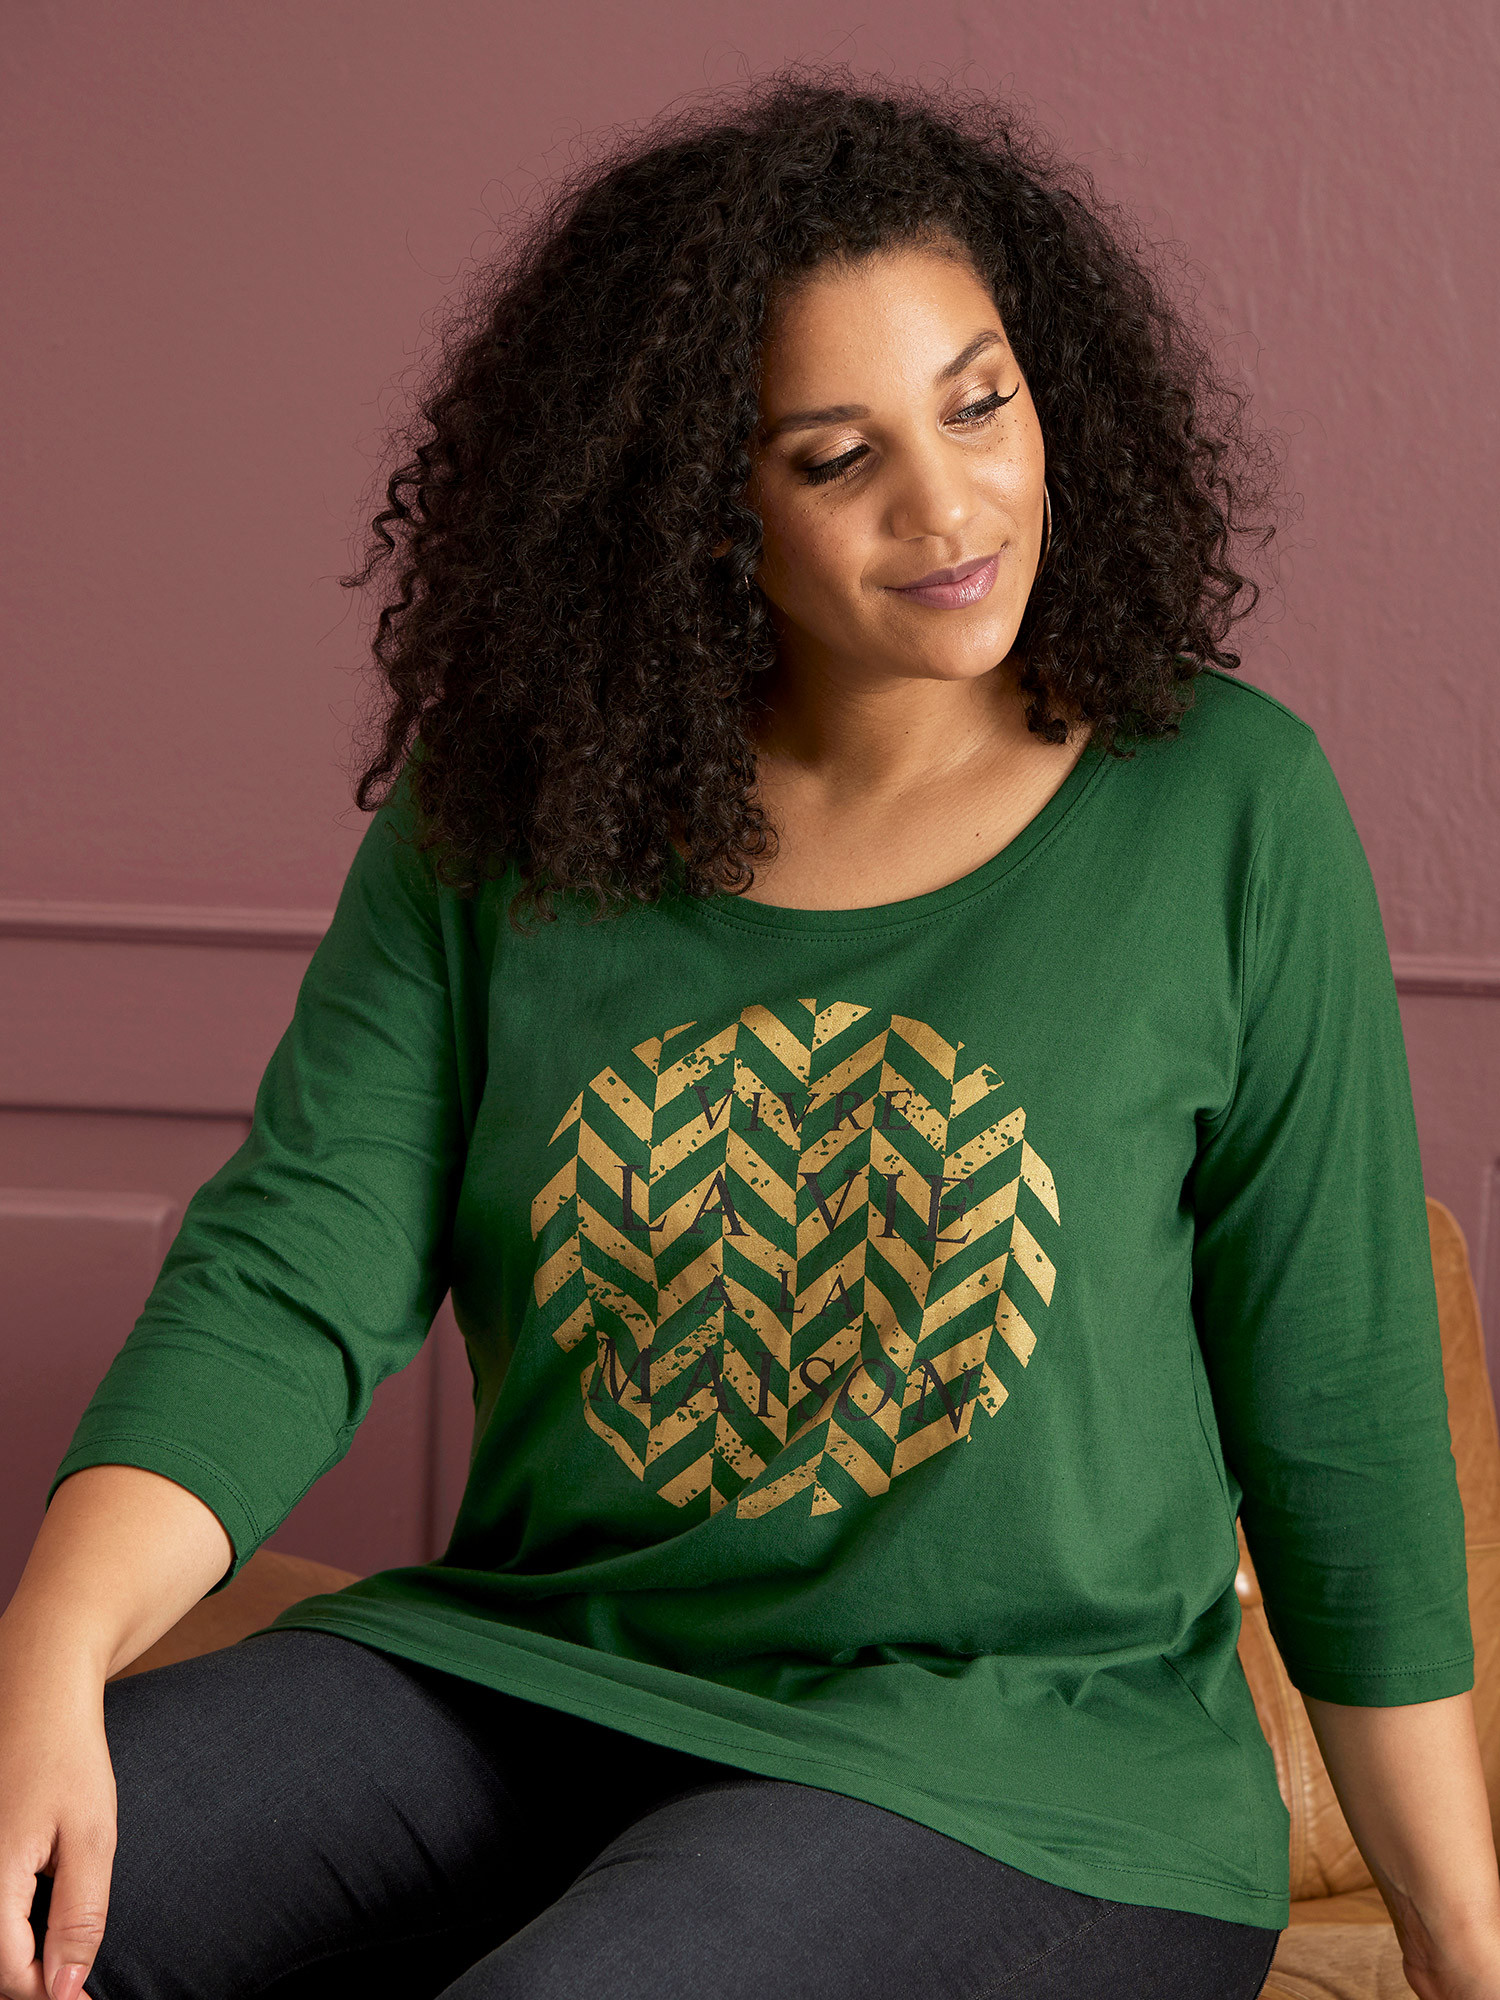 Pave - strikket genser med grønne og svarte ruter